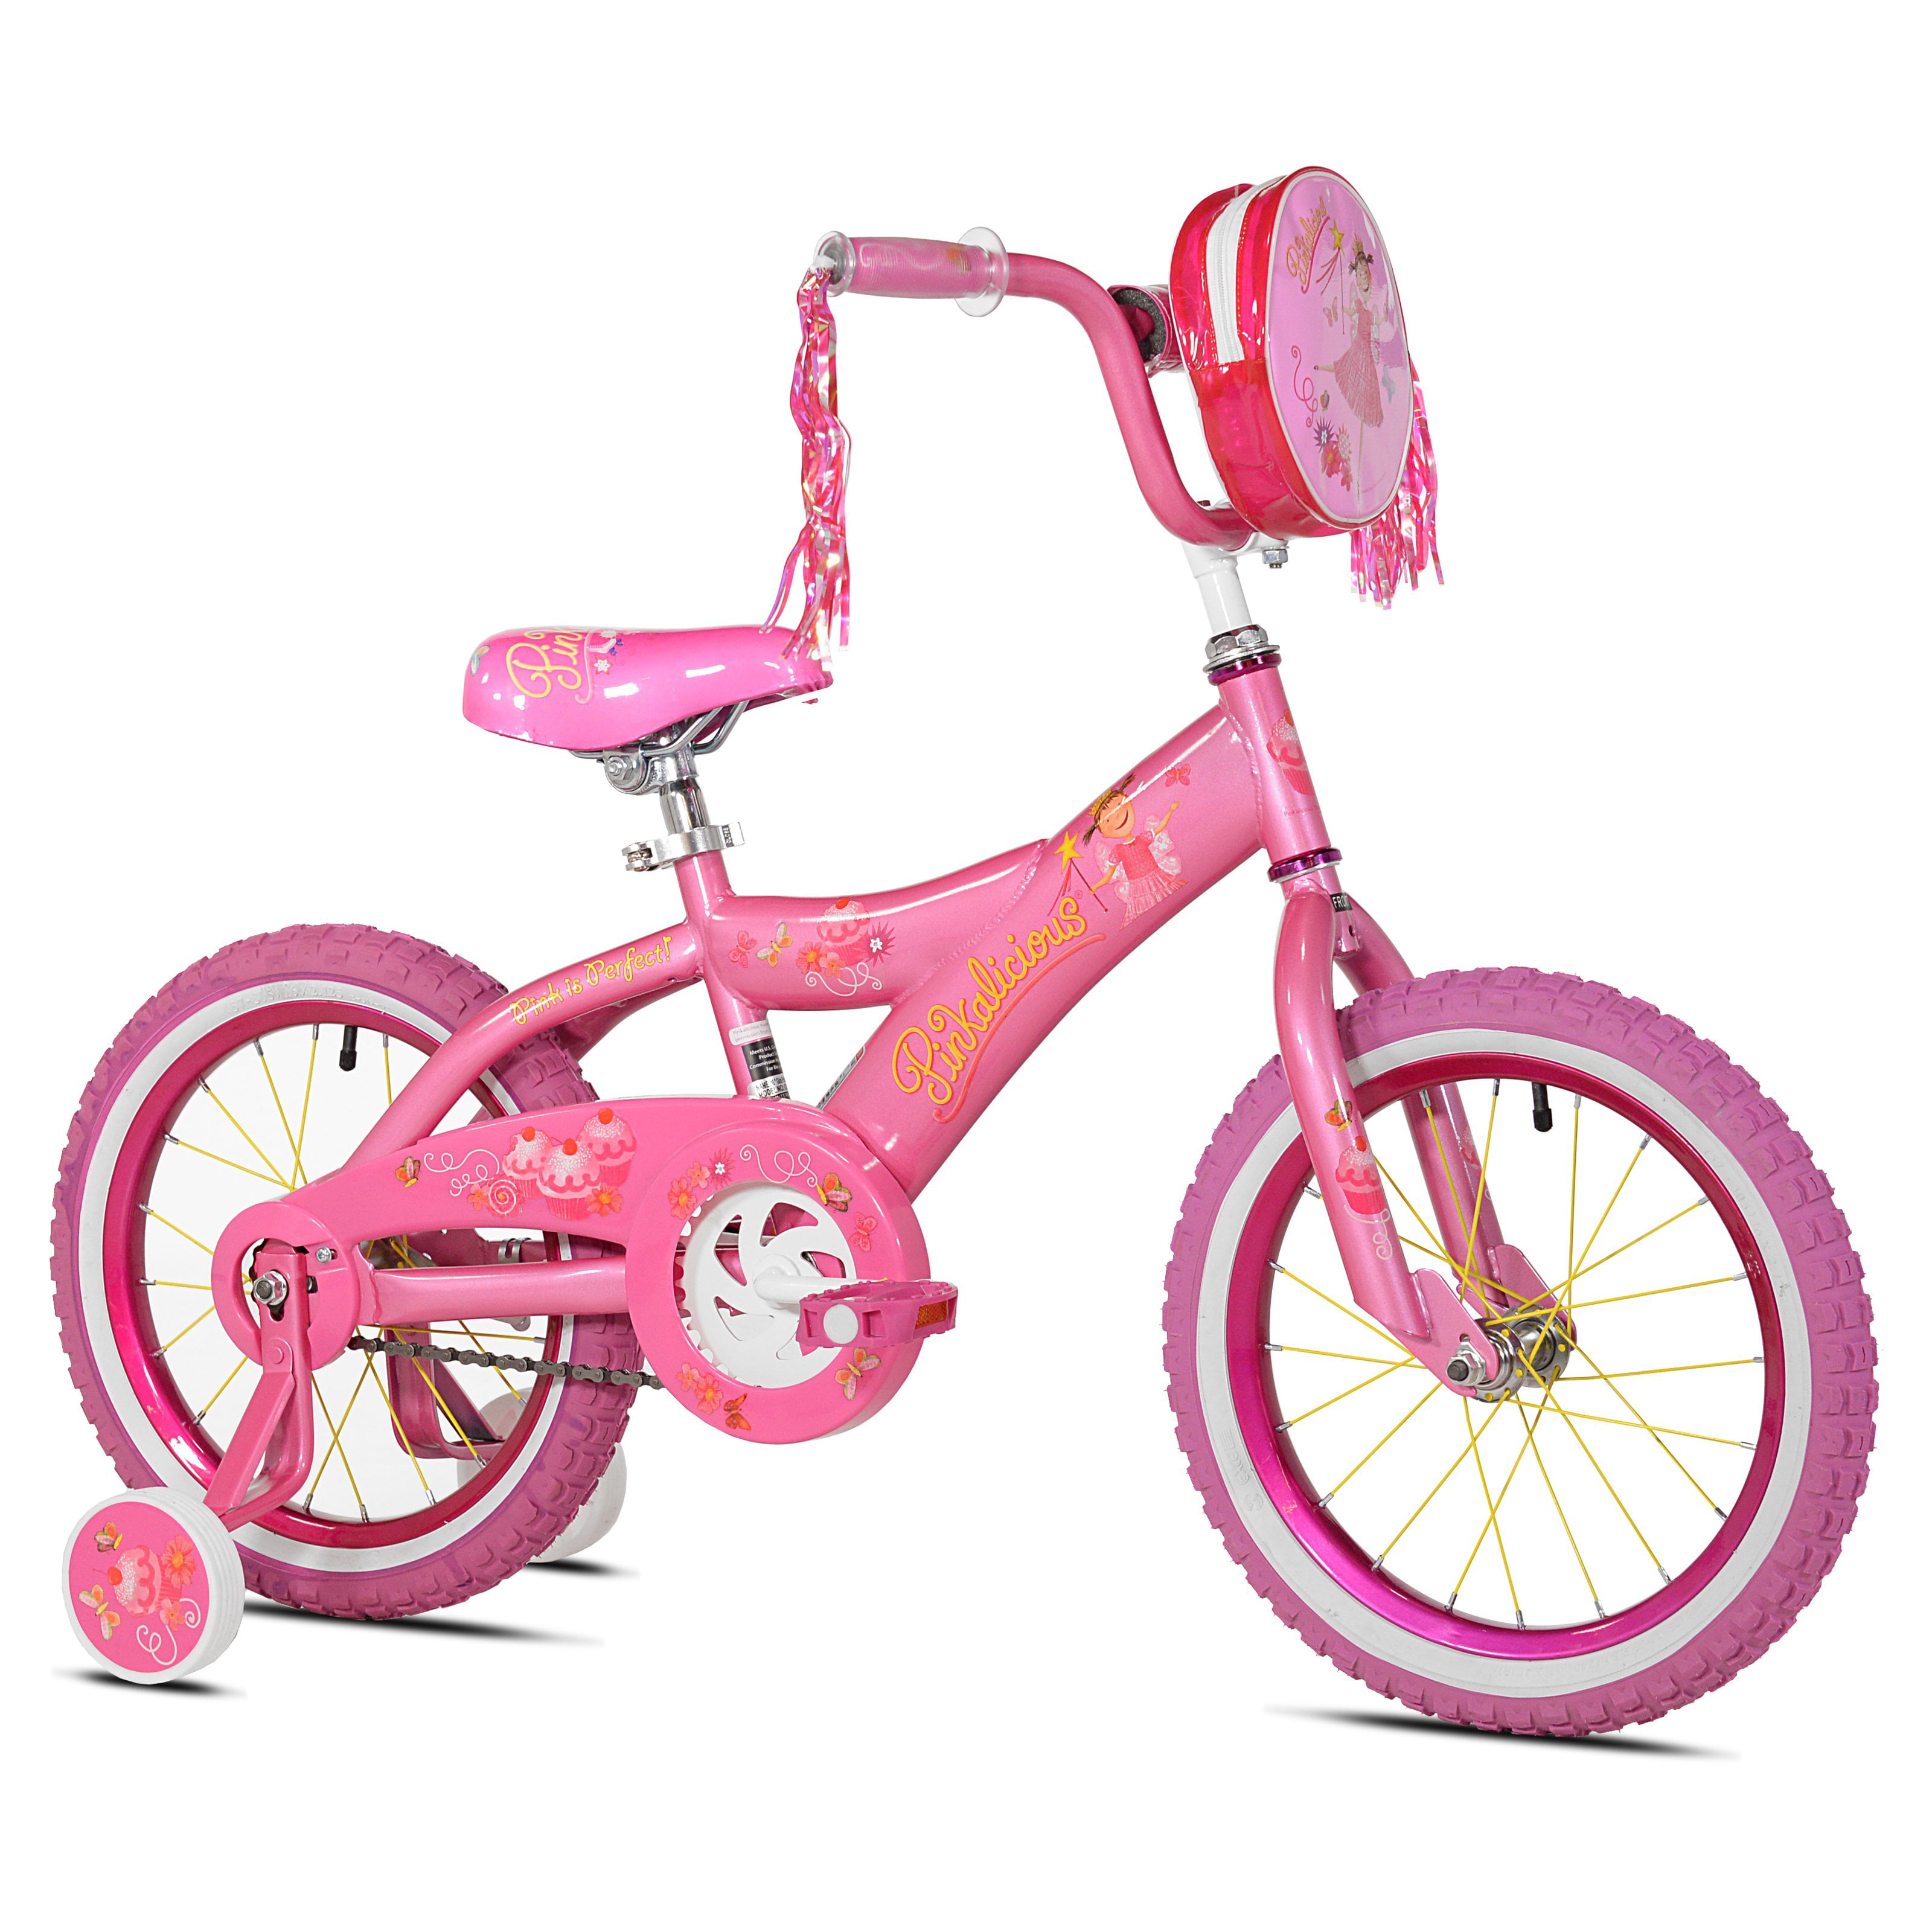 Велосипед 18 розовый. 16" Велосипед Belle розовый ksb160p. Велосипед Pink Panther. Xterra велосипед 16 розовый. Велосипед легкий детский розовый.